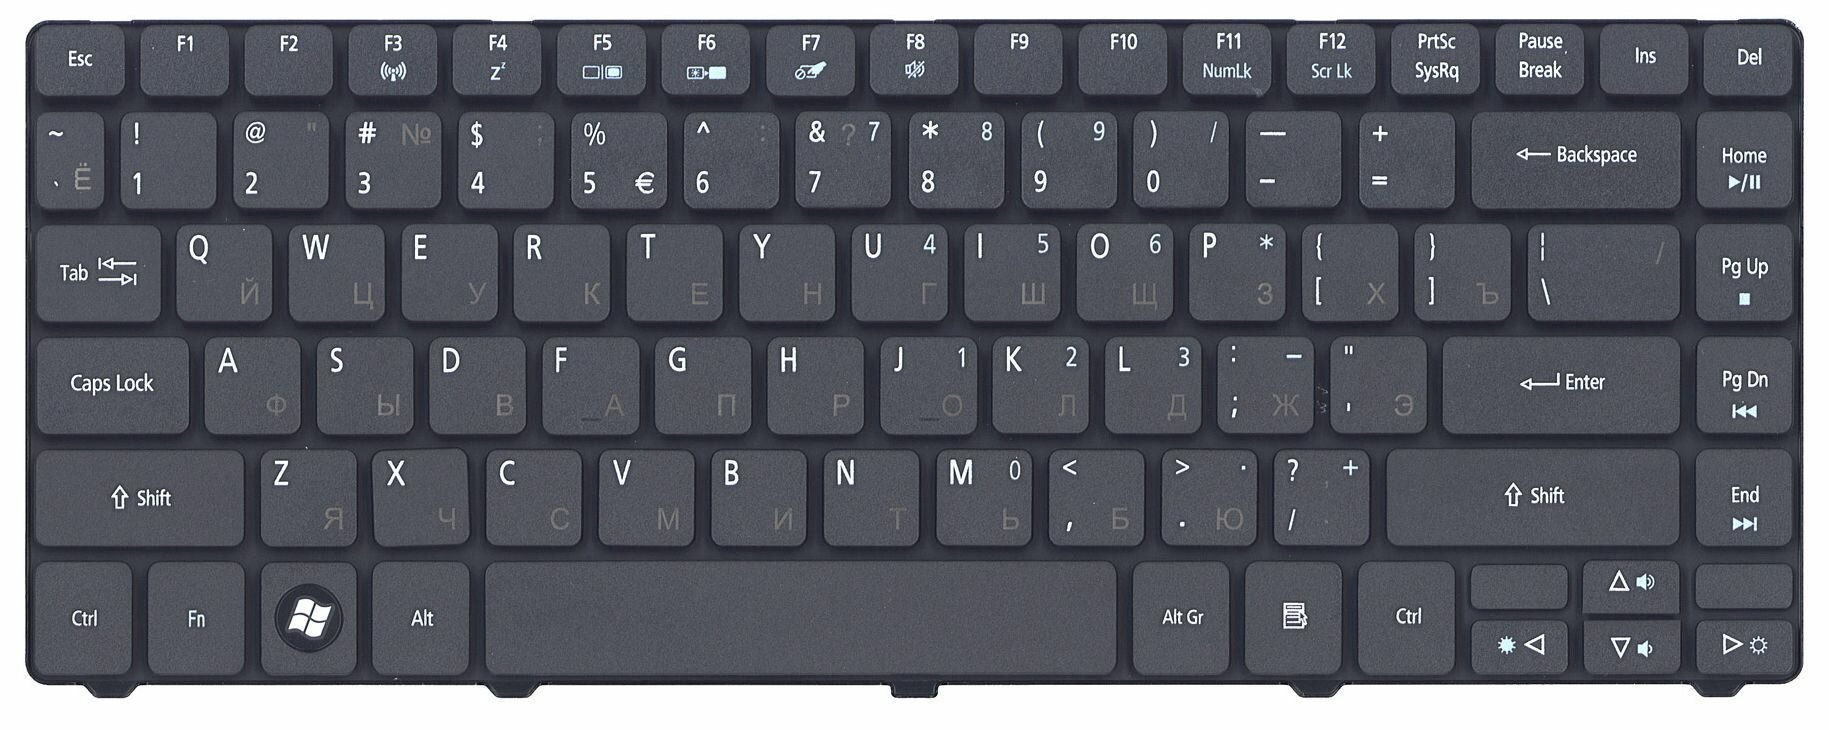 Клавиатура для ноутбука AEZQ1R00010, для ноутбука Acer Aspire 3410, 3810, черная, MB009572